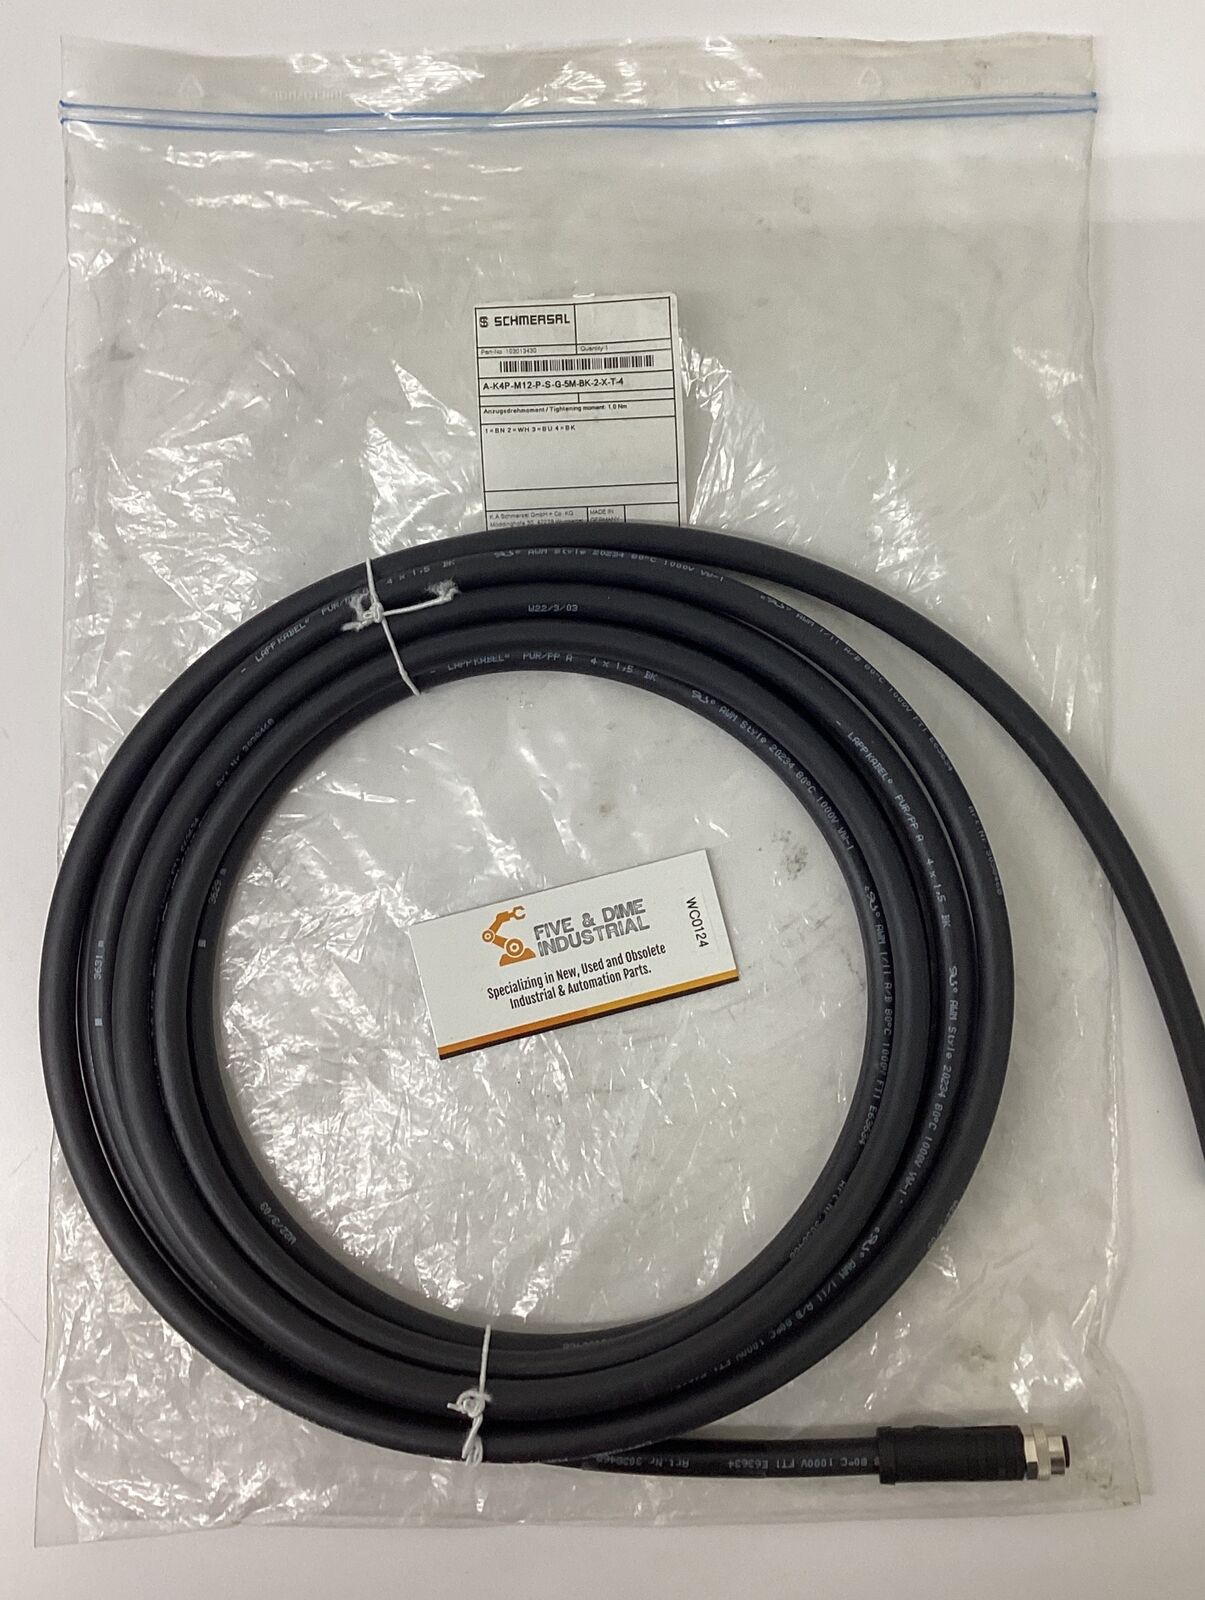 Schmersal 103013430 5M 4-Pole Cable A-K4P-M12-P-S-G-5M-BK-2-X-T-4 (CBL156)